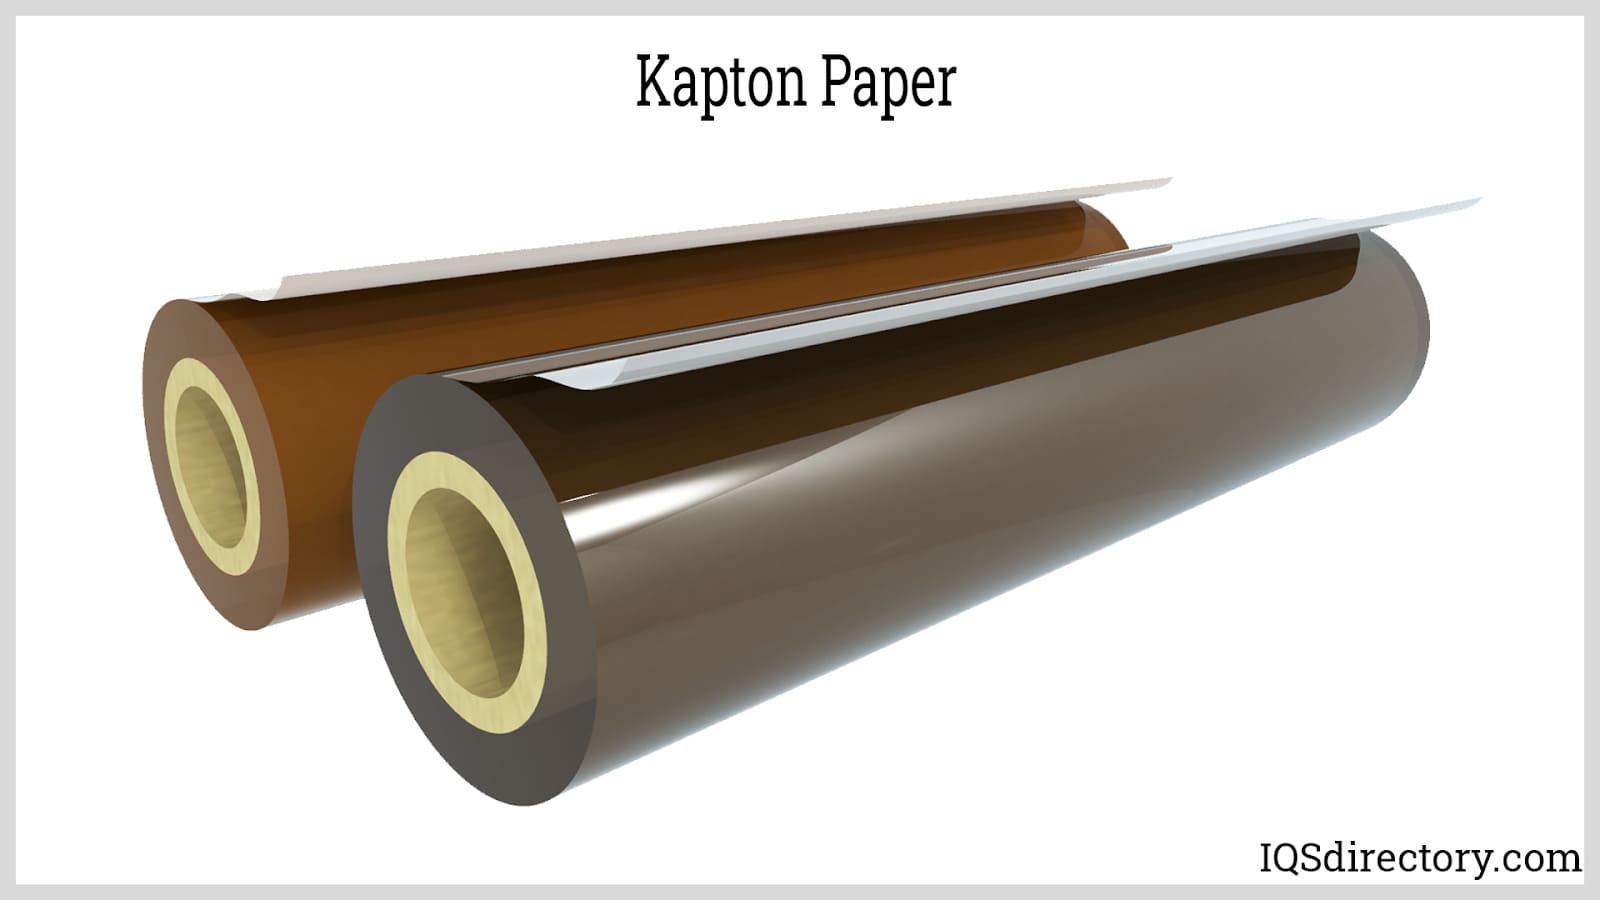 Kapton Paper